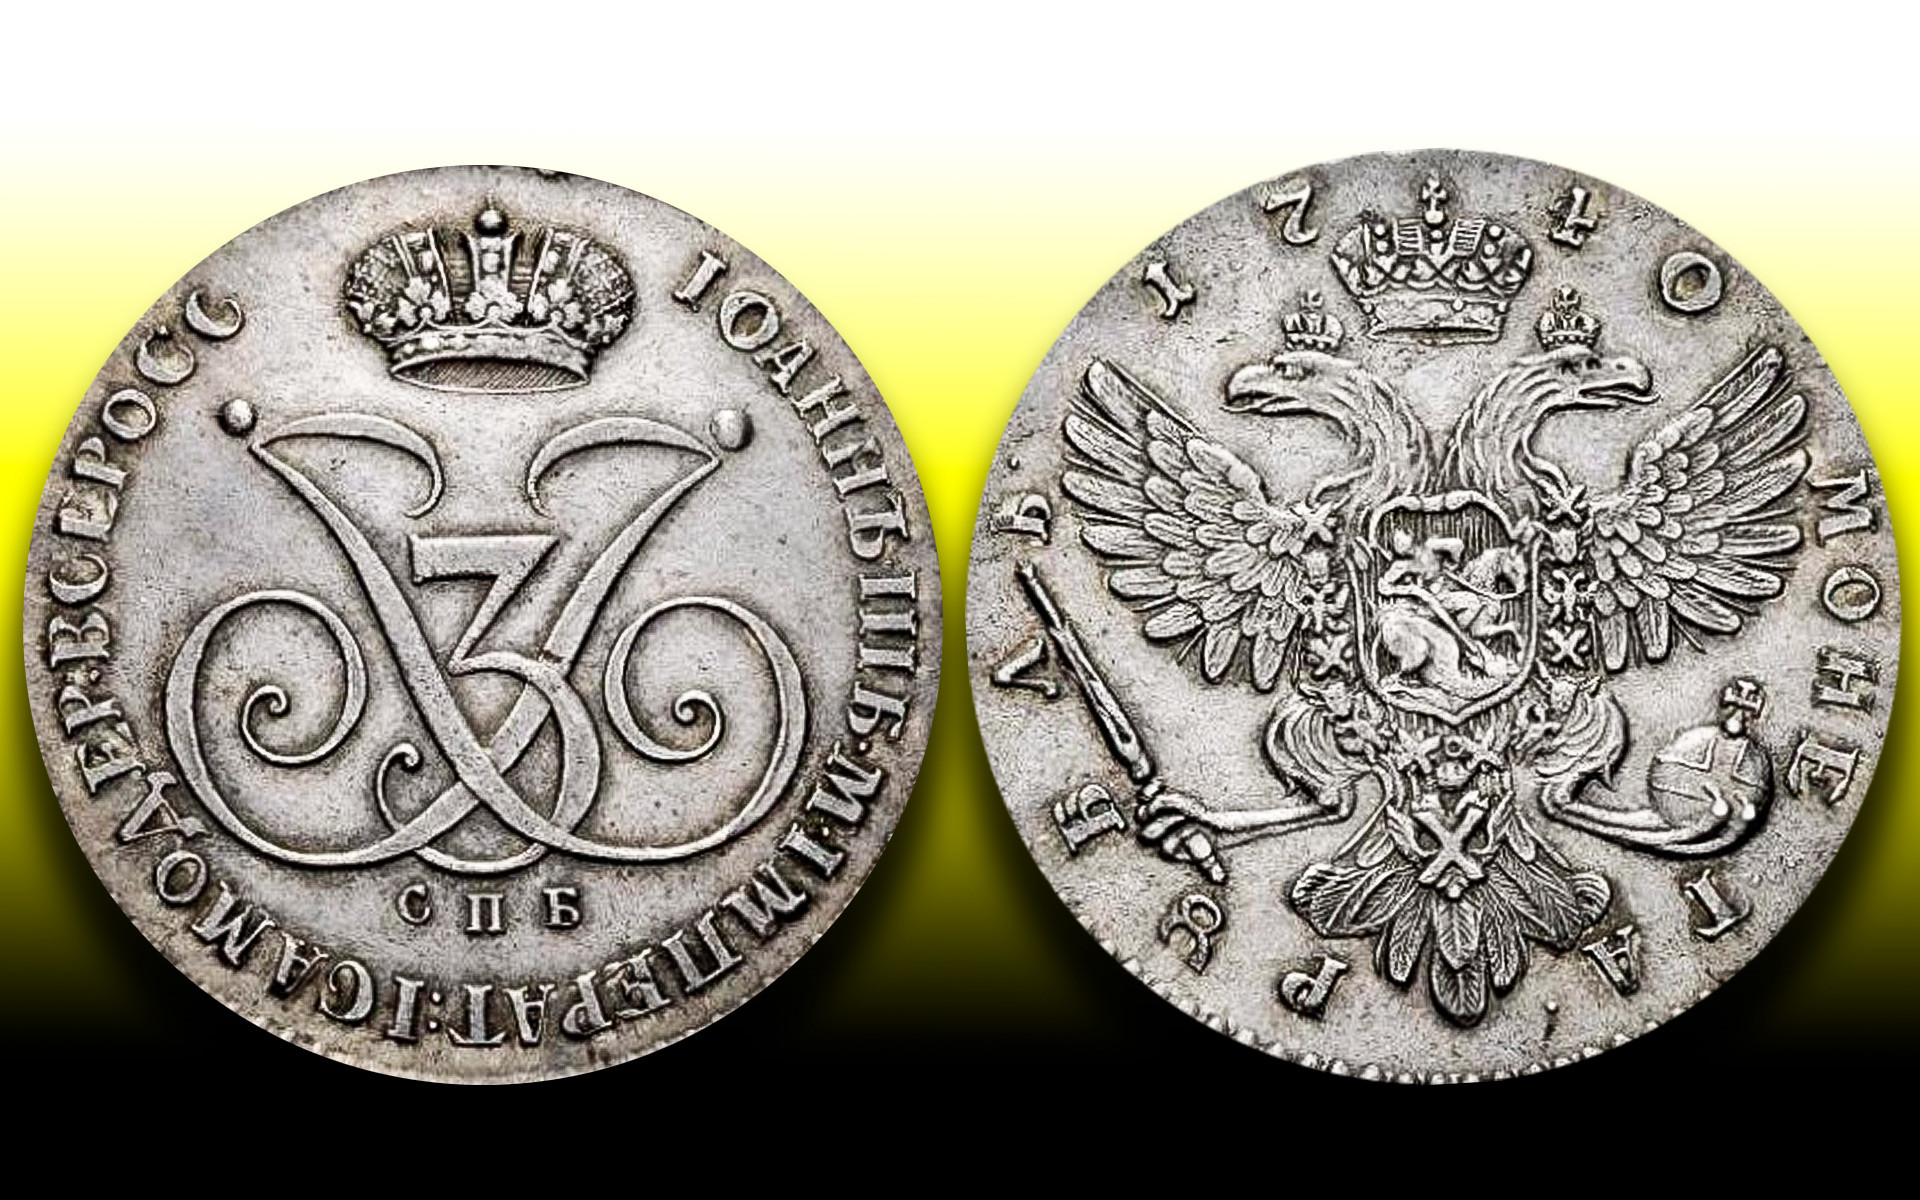 ロシア帝国の最も希少で高価なコイン5つ - ロシア・ビヨンド